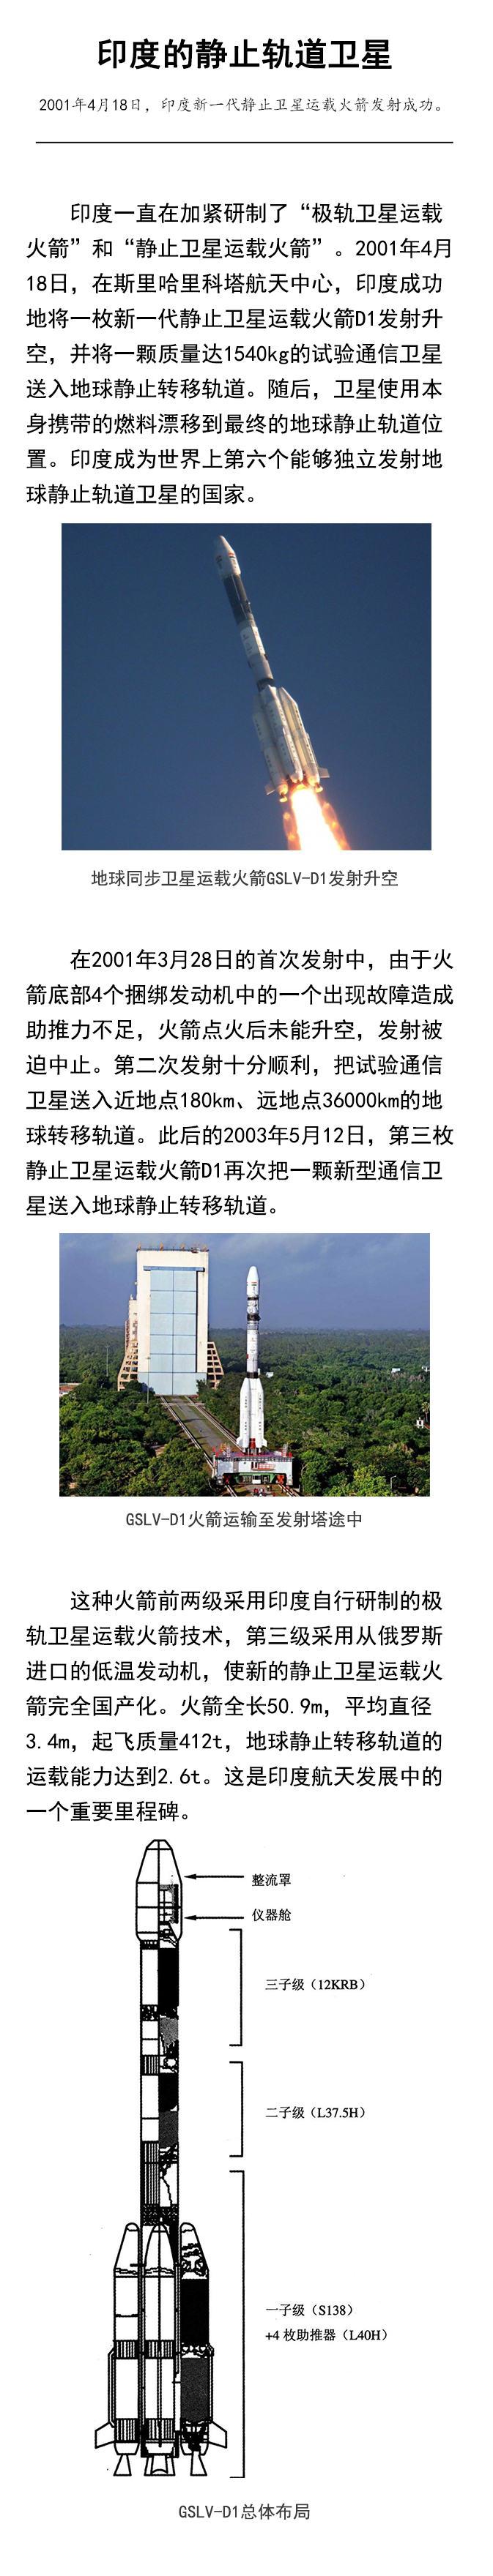 印度新一代静止卫星运载火箭发射成功 腾讯新闻